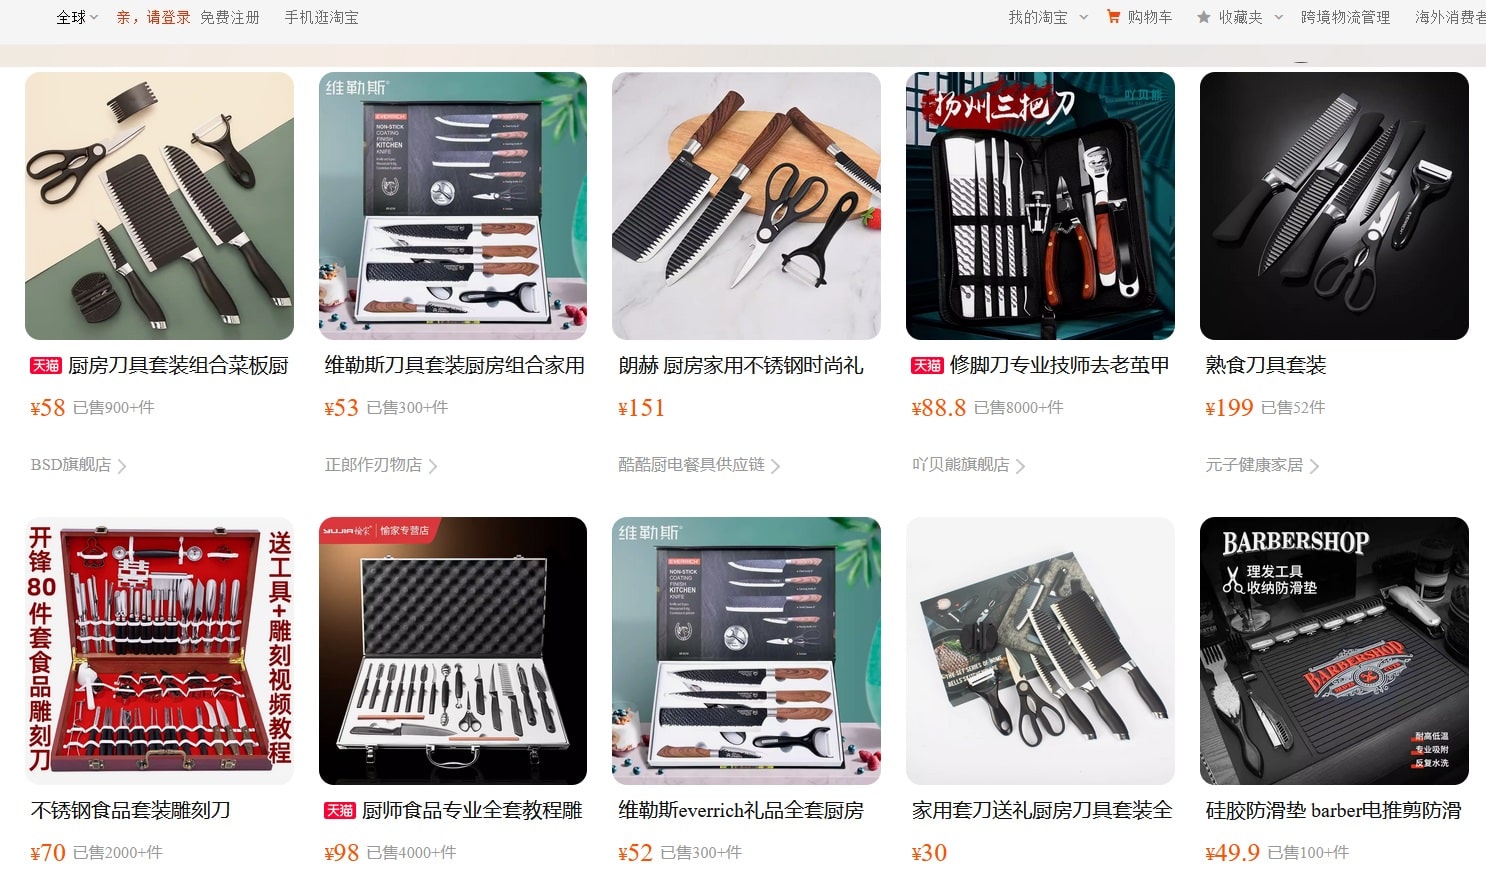 Как найти похожие товары на Taobao